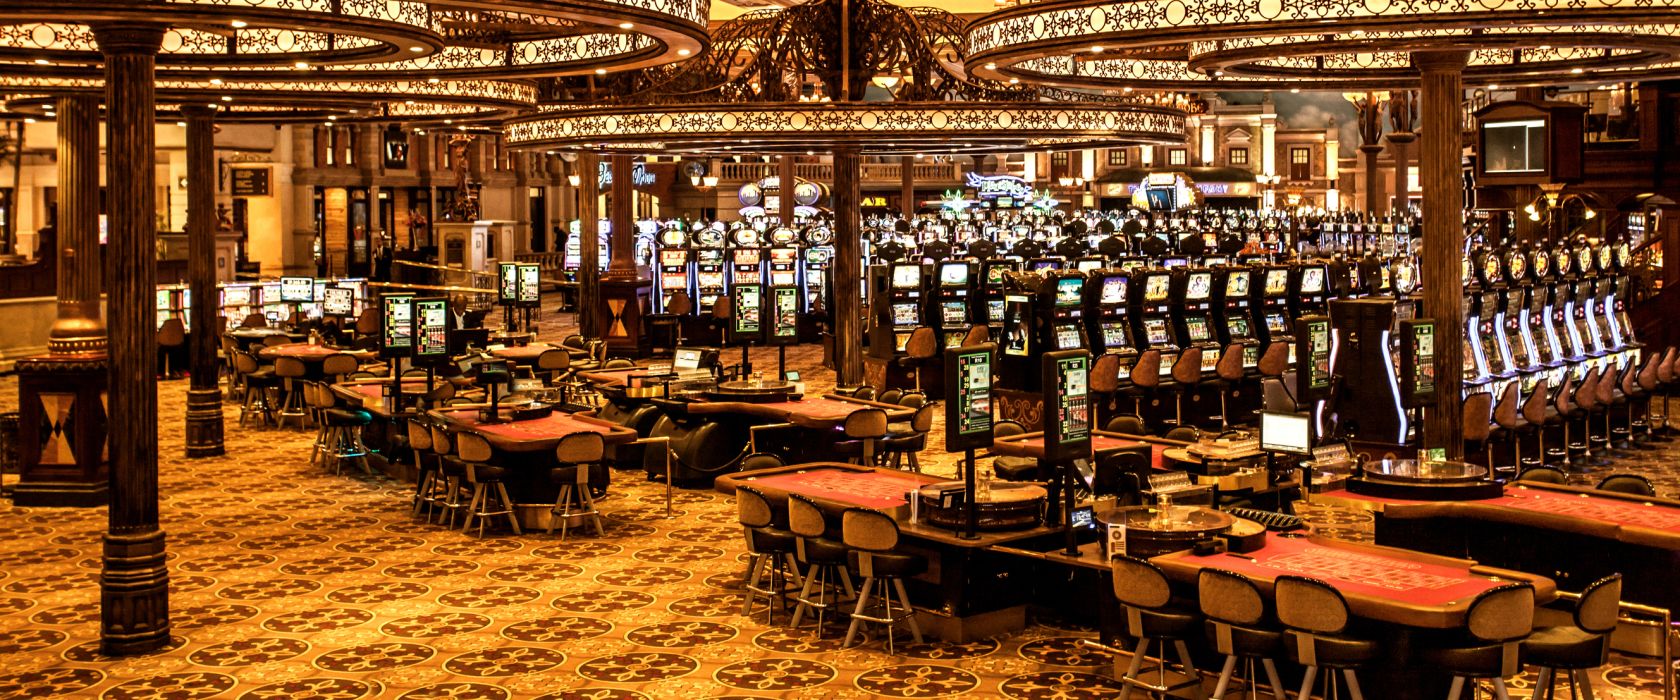 Online Casino Test Computer Bild